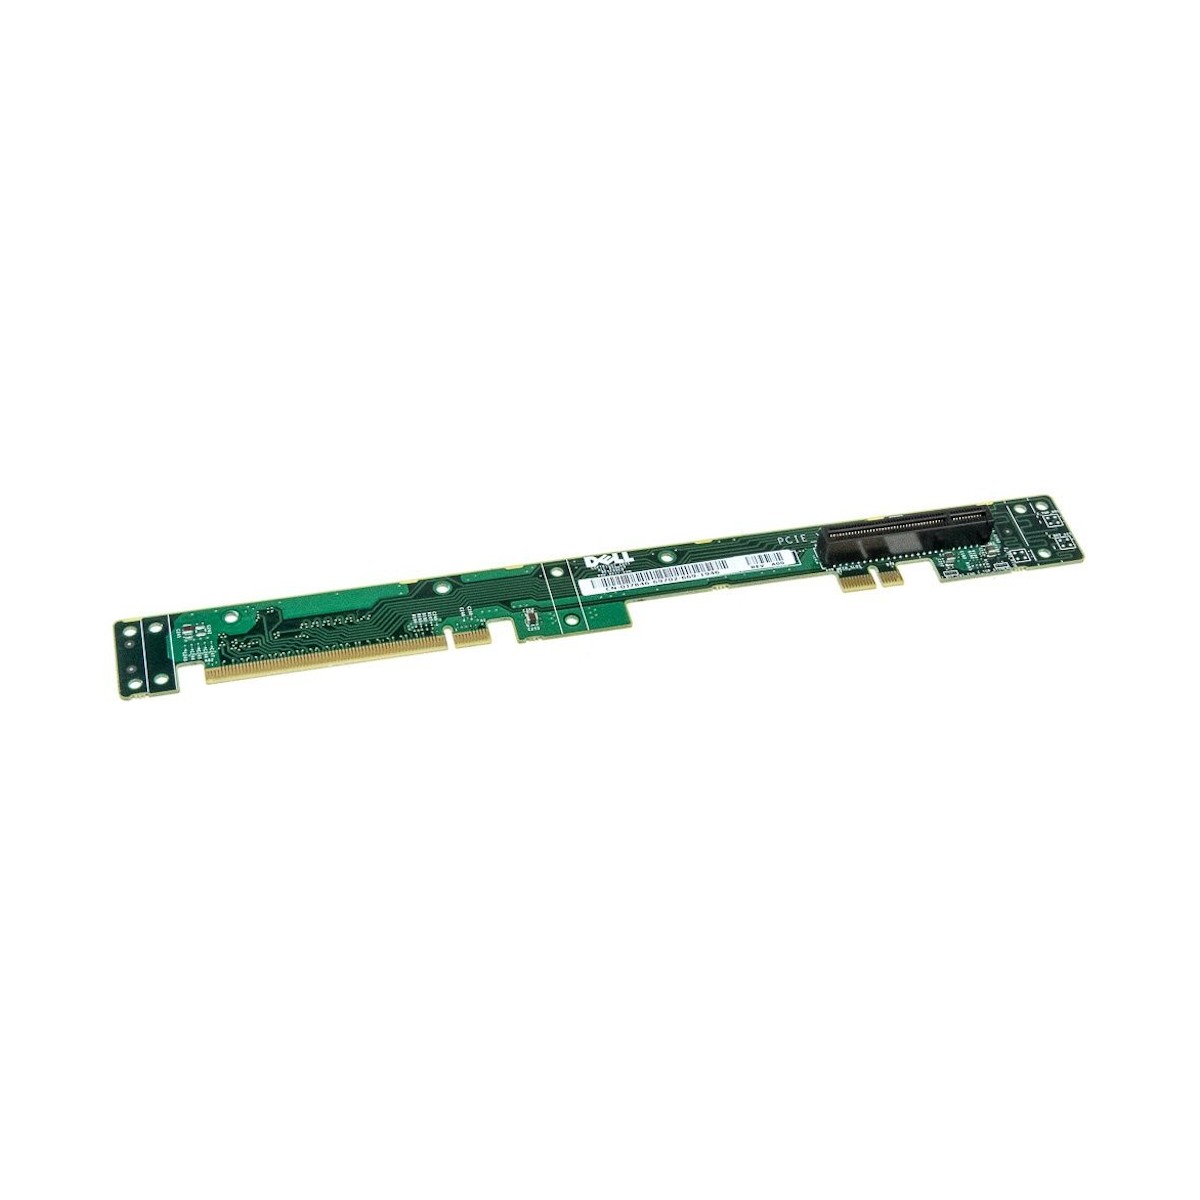 RISER BOARD DELL POWEREDGE 1950 PCI-e x8 0J7846